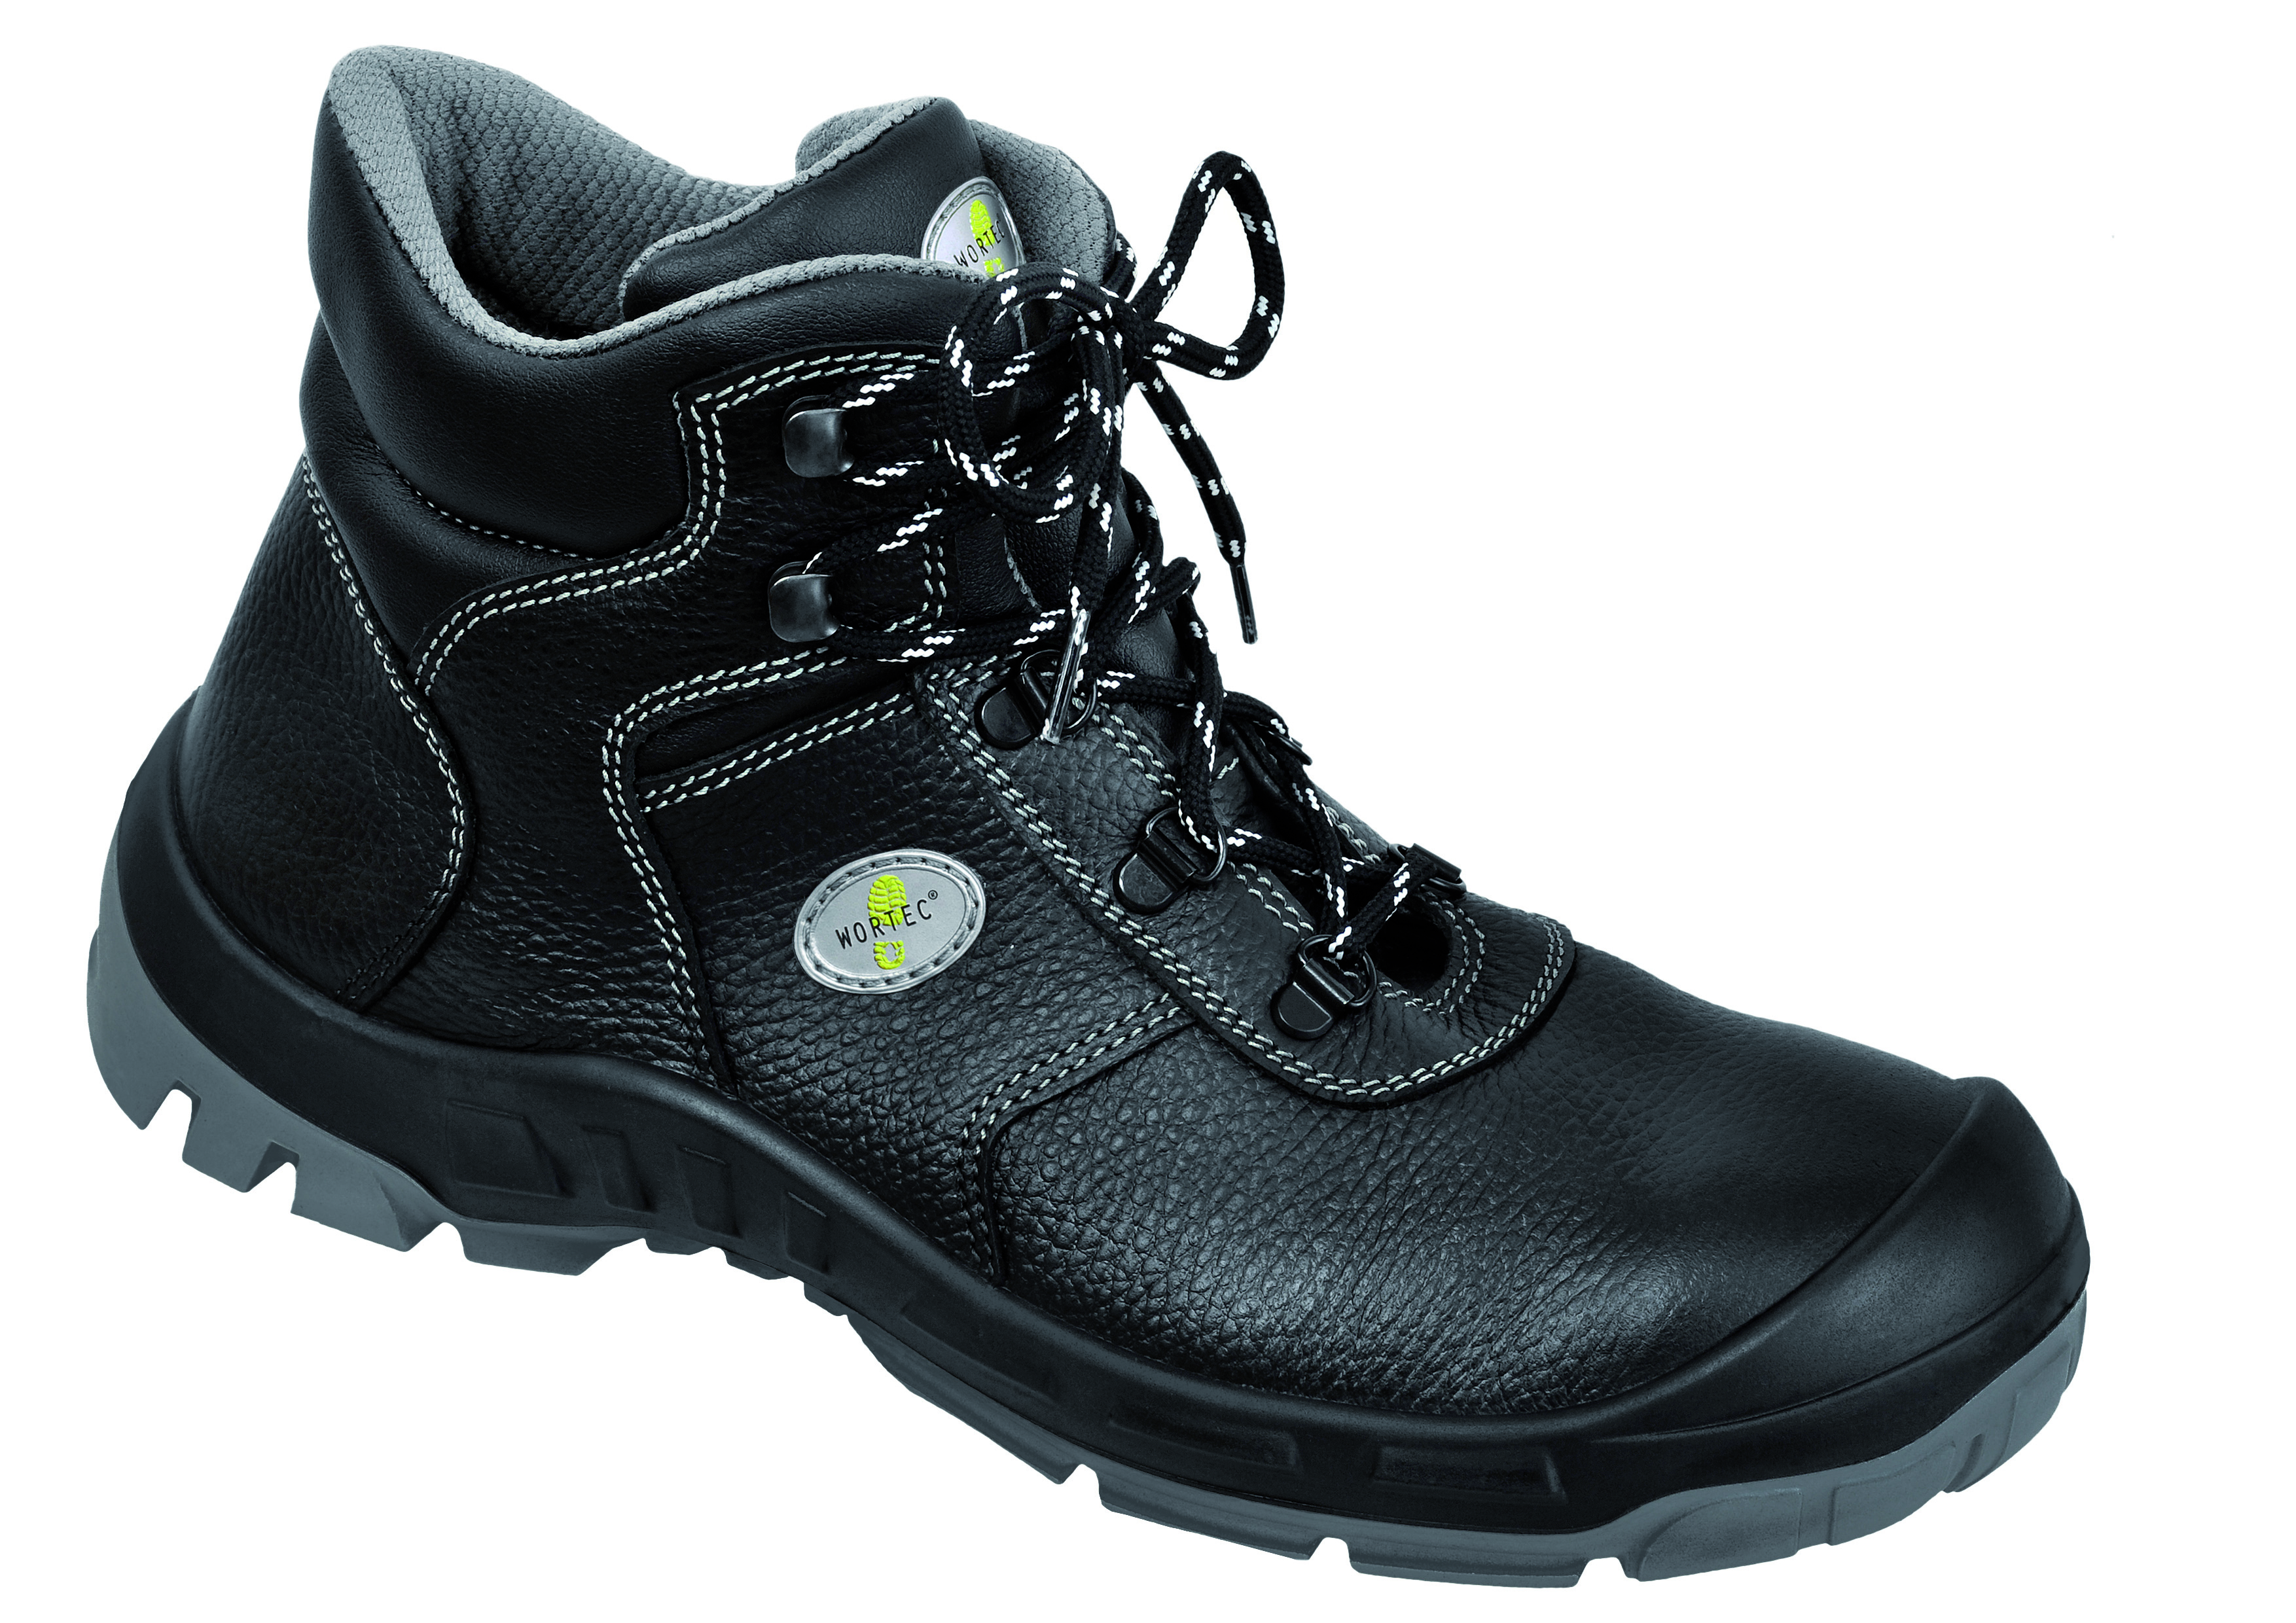 WORTEC-Footwear-ACHIM, S2-Sicherheits-Arbeits-Berufs-Schuhe, Schnürstiefel, schwarz